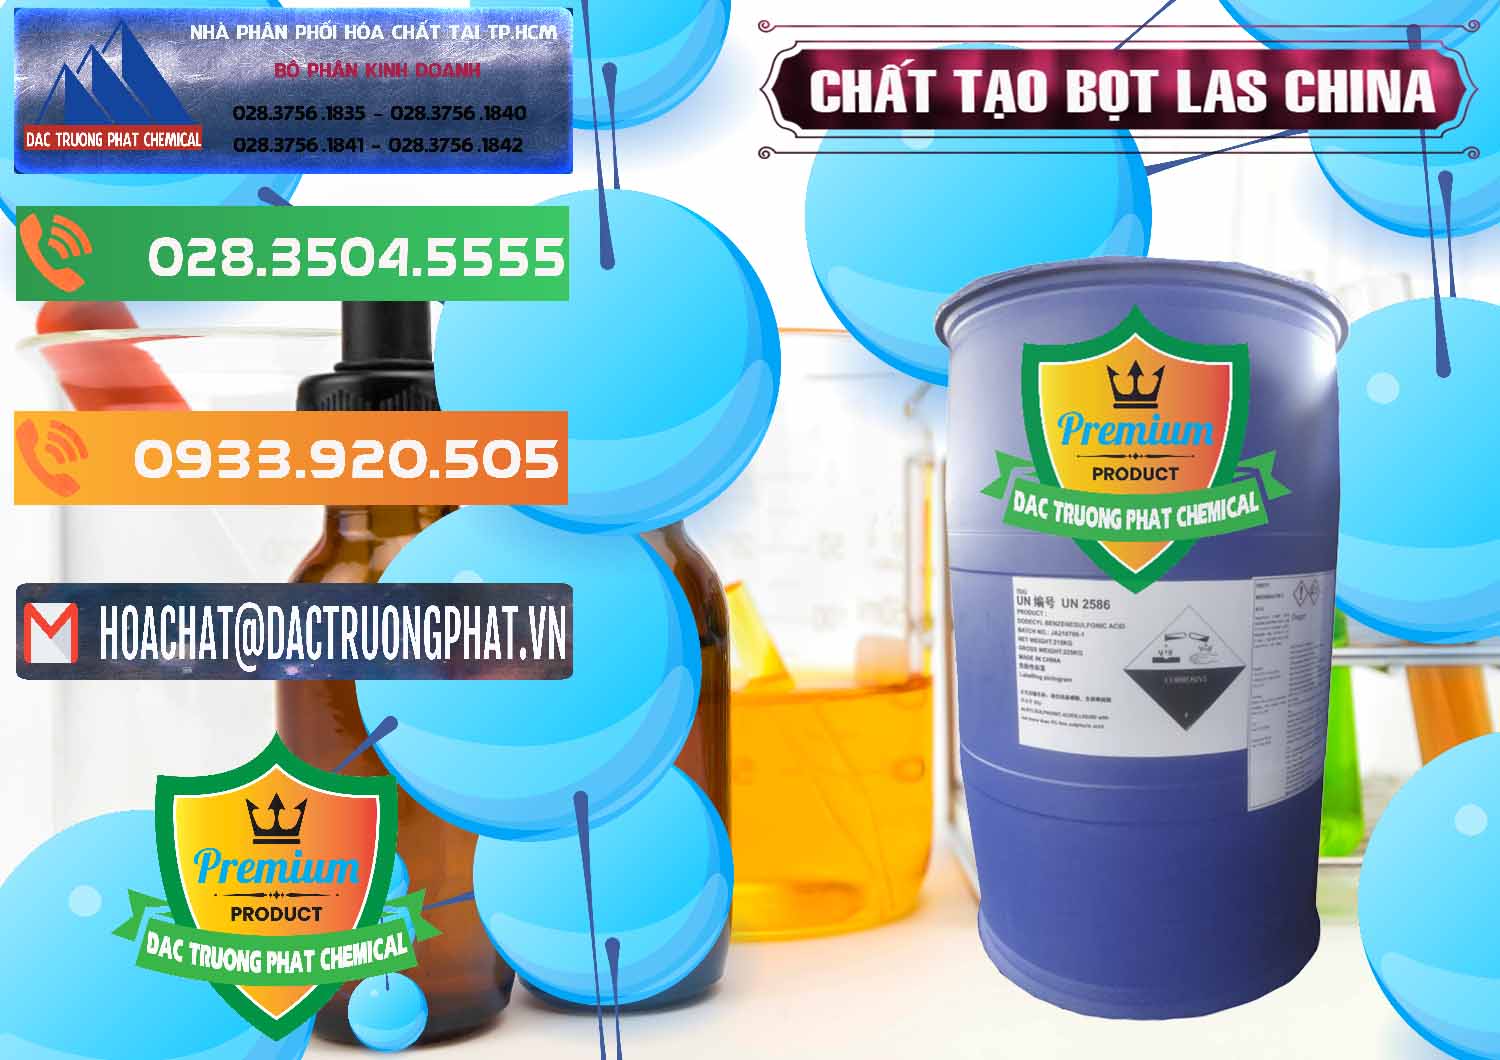 Nơi bán - phân phối Chất tạo bọt Las Trung Quốc China - 0451 - Công ty phân phối - cung cấp hóa chất tại TP.HCM - hoachatxulynuoc.com.vn